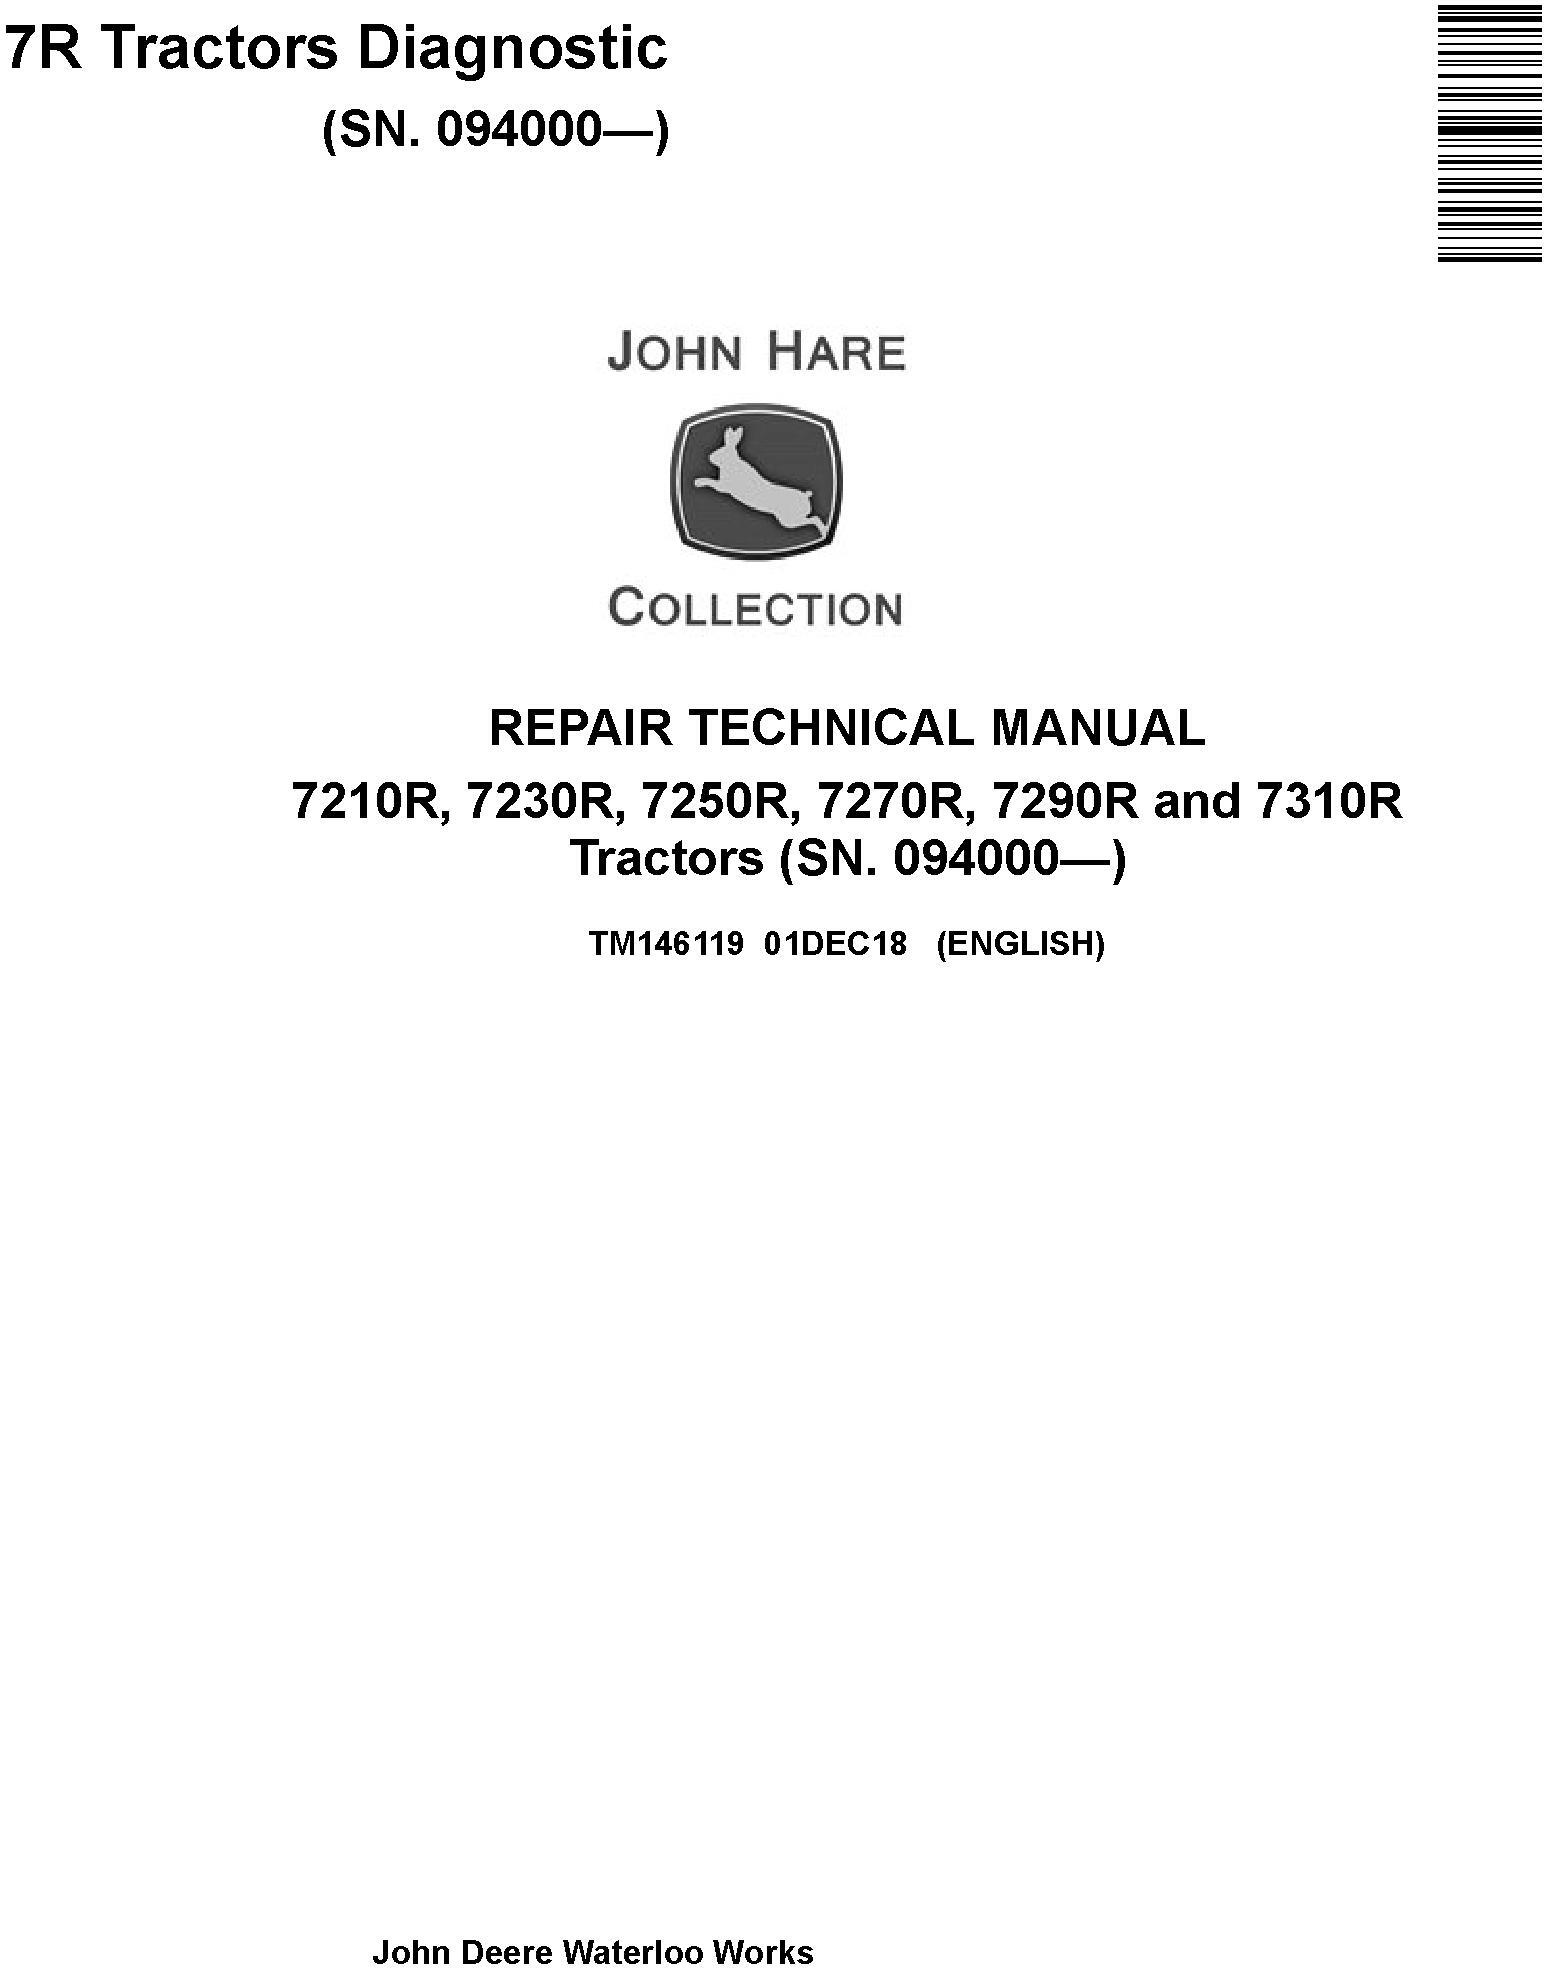 John Deere 7210R 7230R 7250R 7270R 7290R 7310R Tractor Diagnostic Repair Manual TM146119